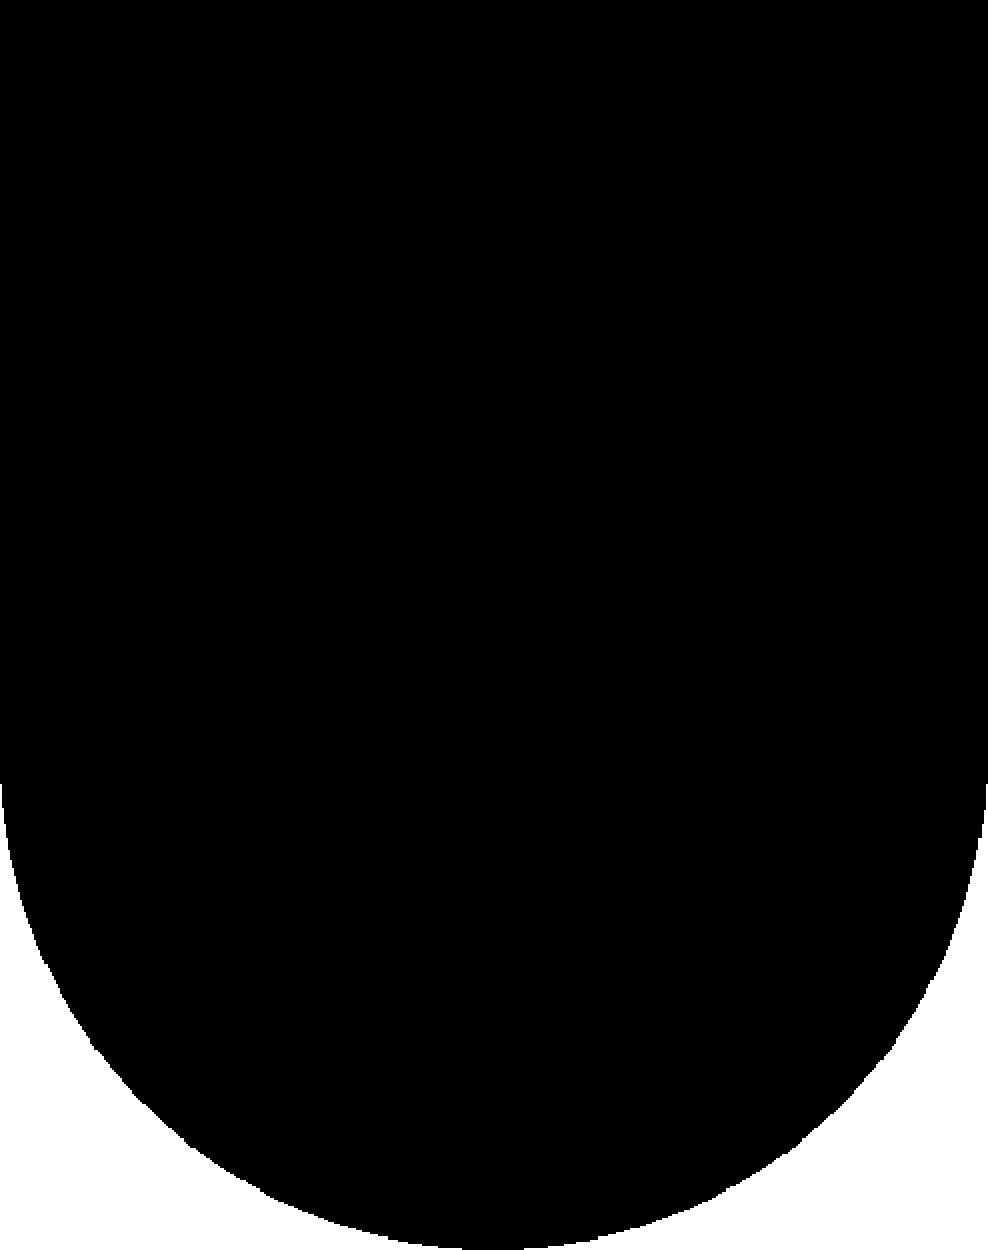 Das Wappen setzt sich aus den Wappen der Drei Bünden, die auch dem Kanton auch den Namen gegeben